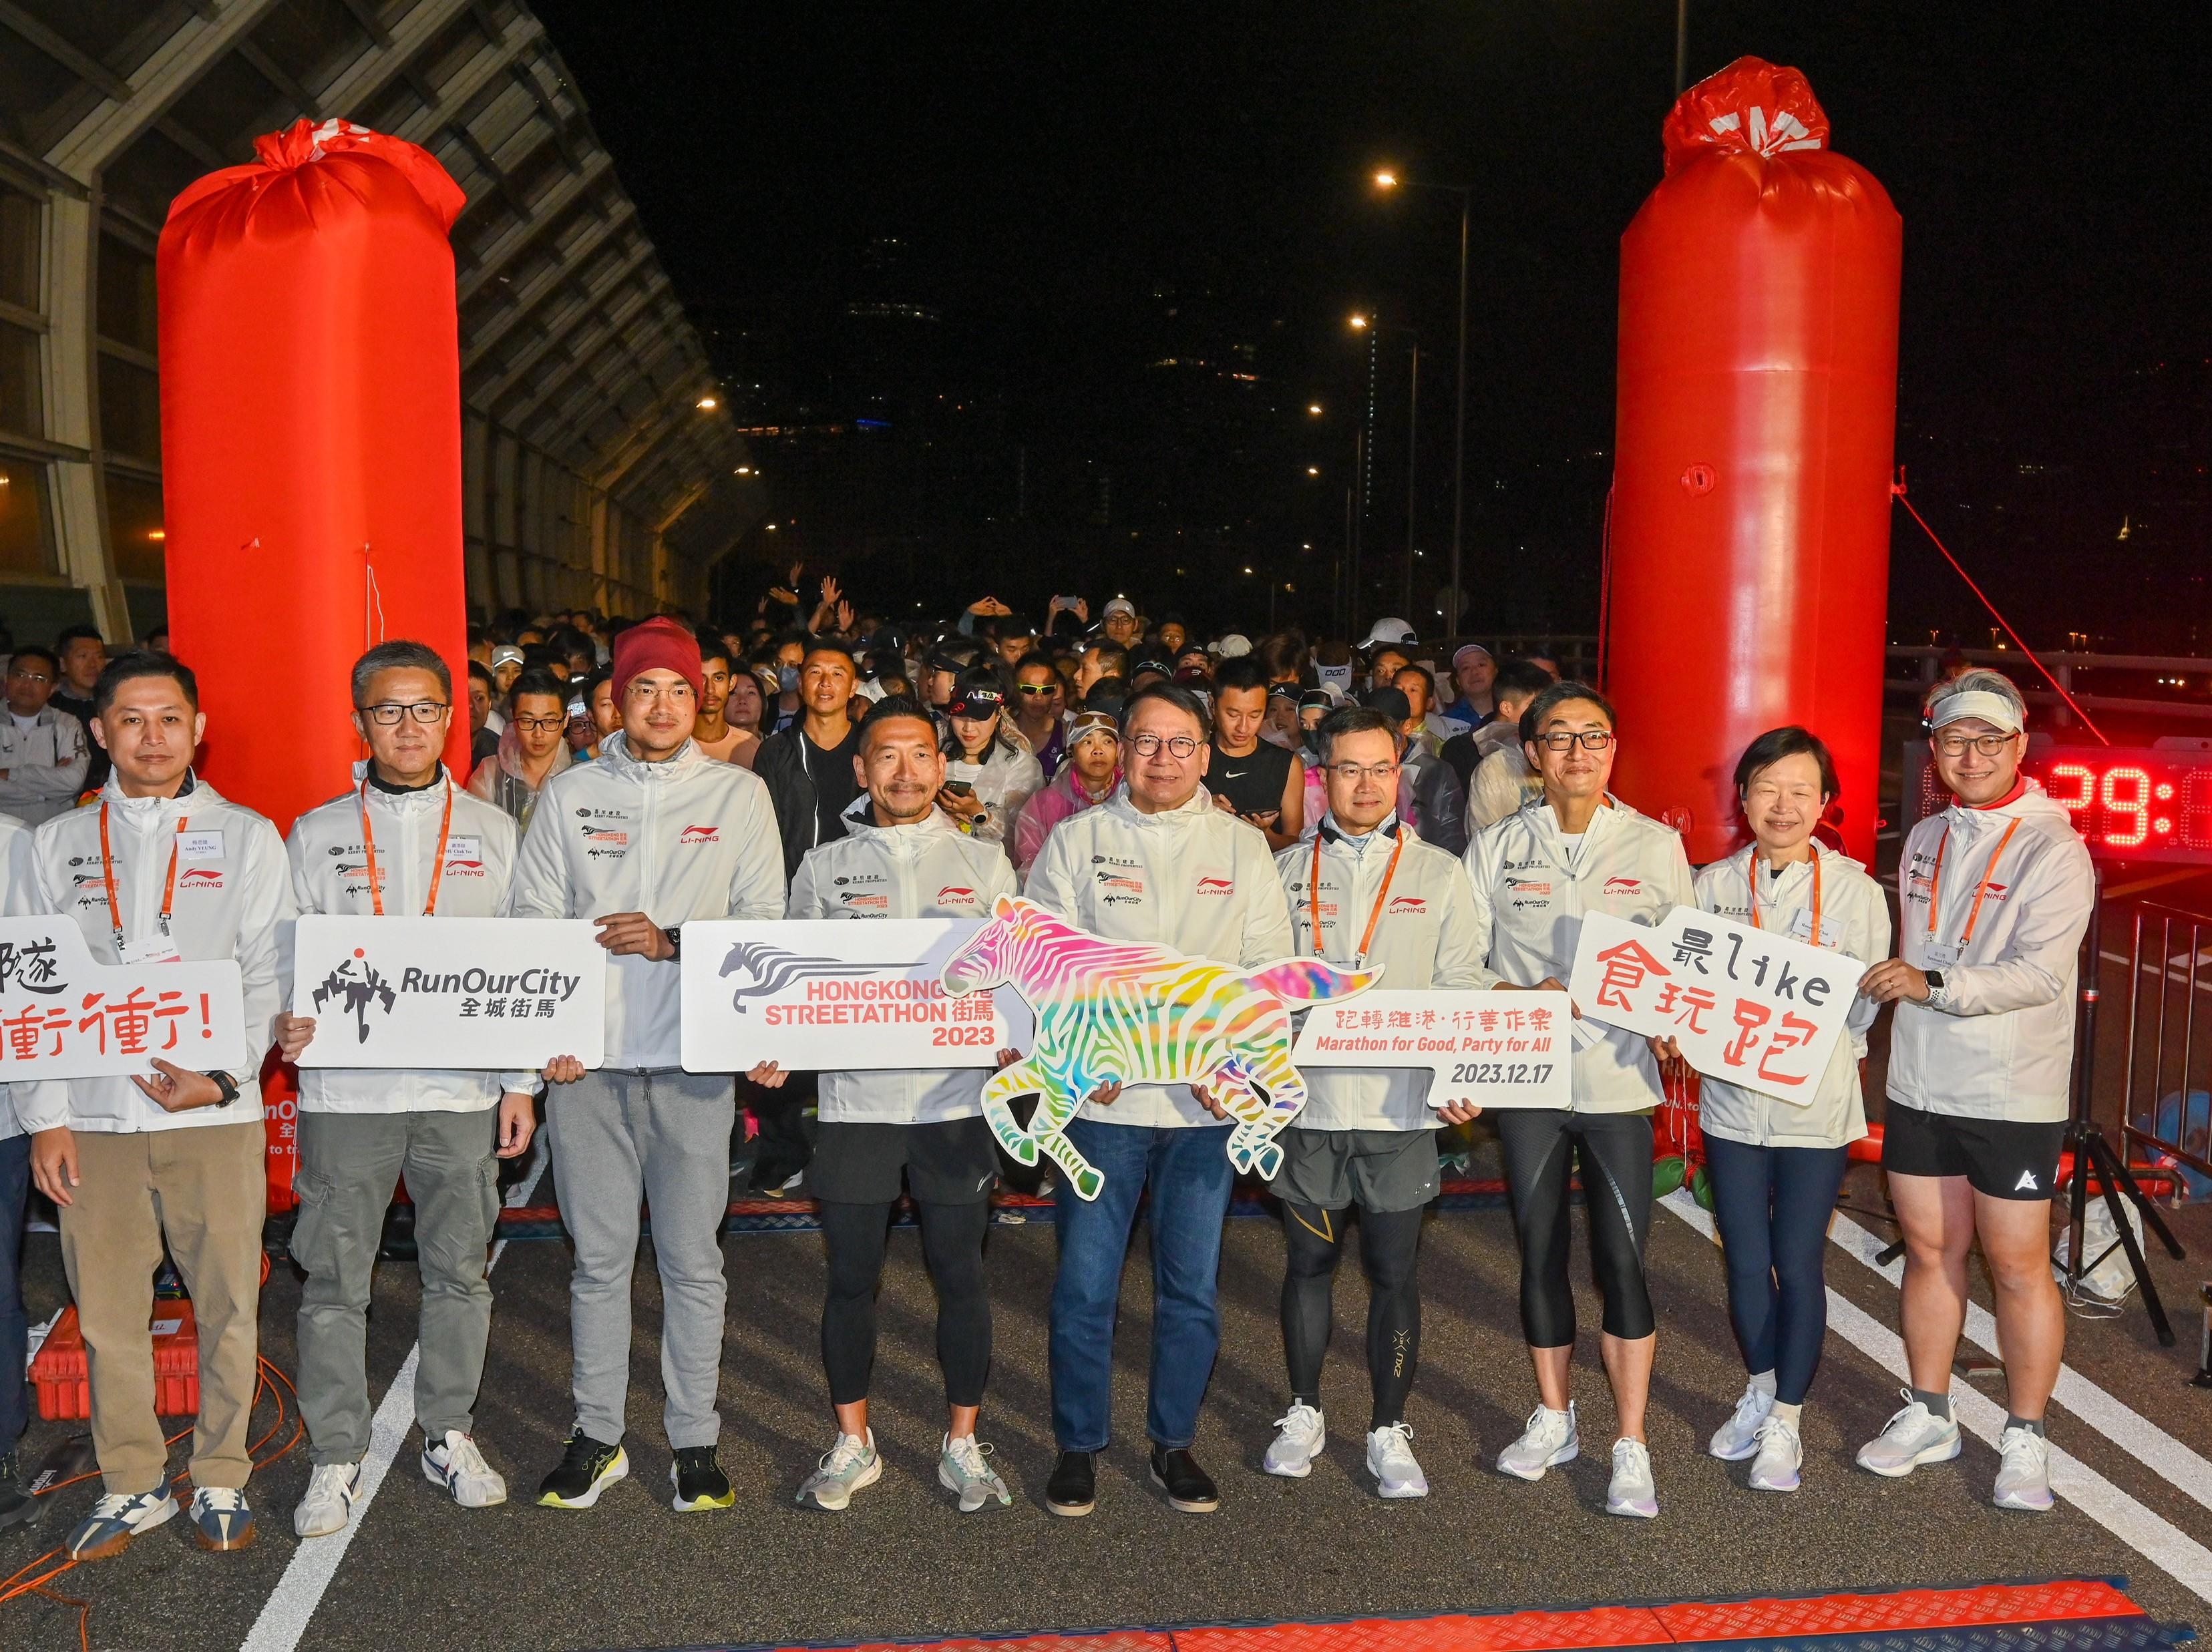 政務司司長陳國基今日（十二月十七日）出席「香港街馬2023」慈善跑開跑典禮。圖示陳國基（中）和一眾嘉賓和跑手在起跑前合照。